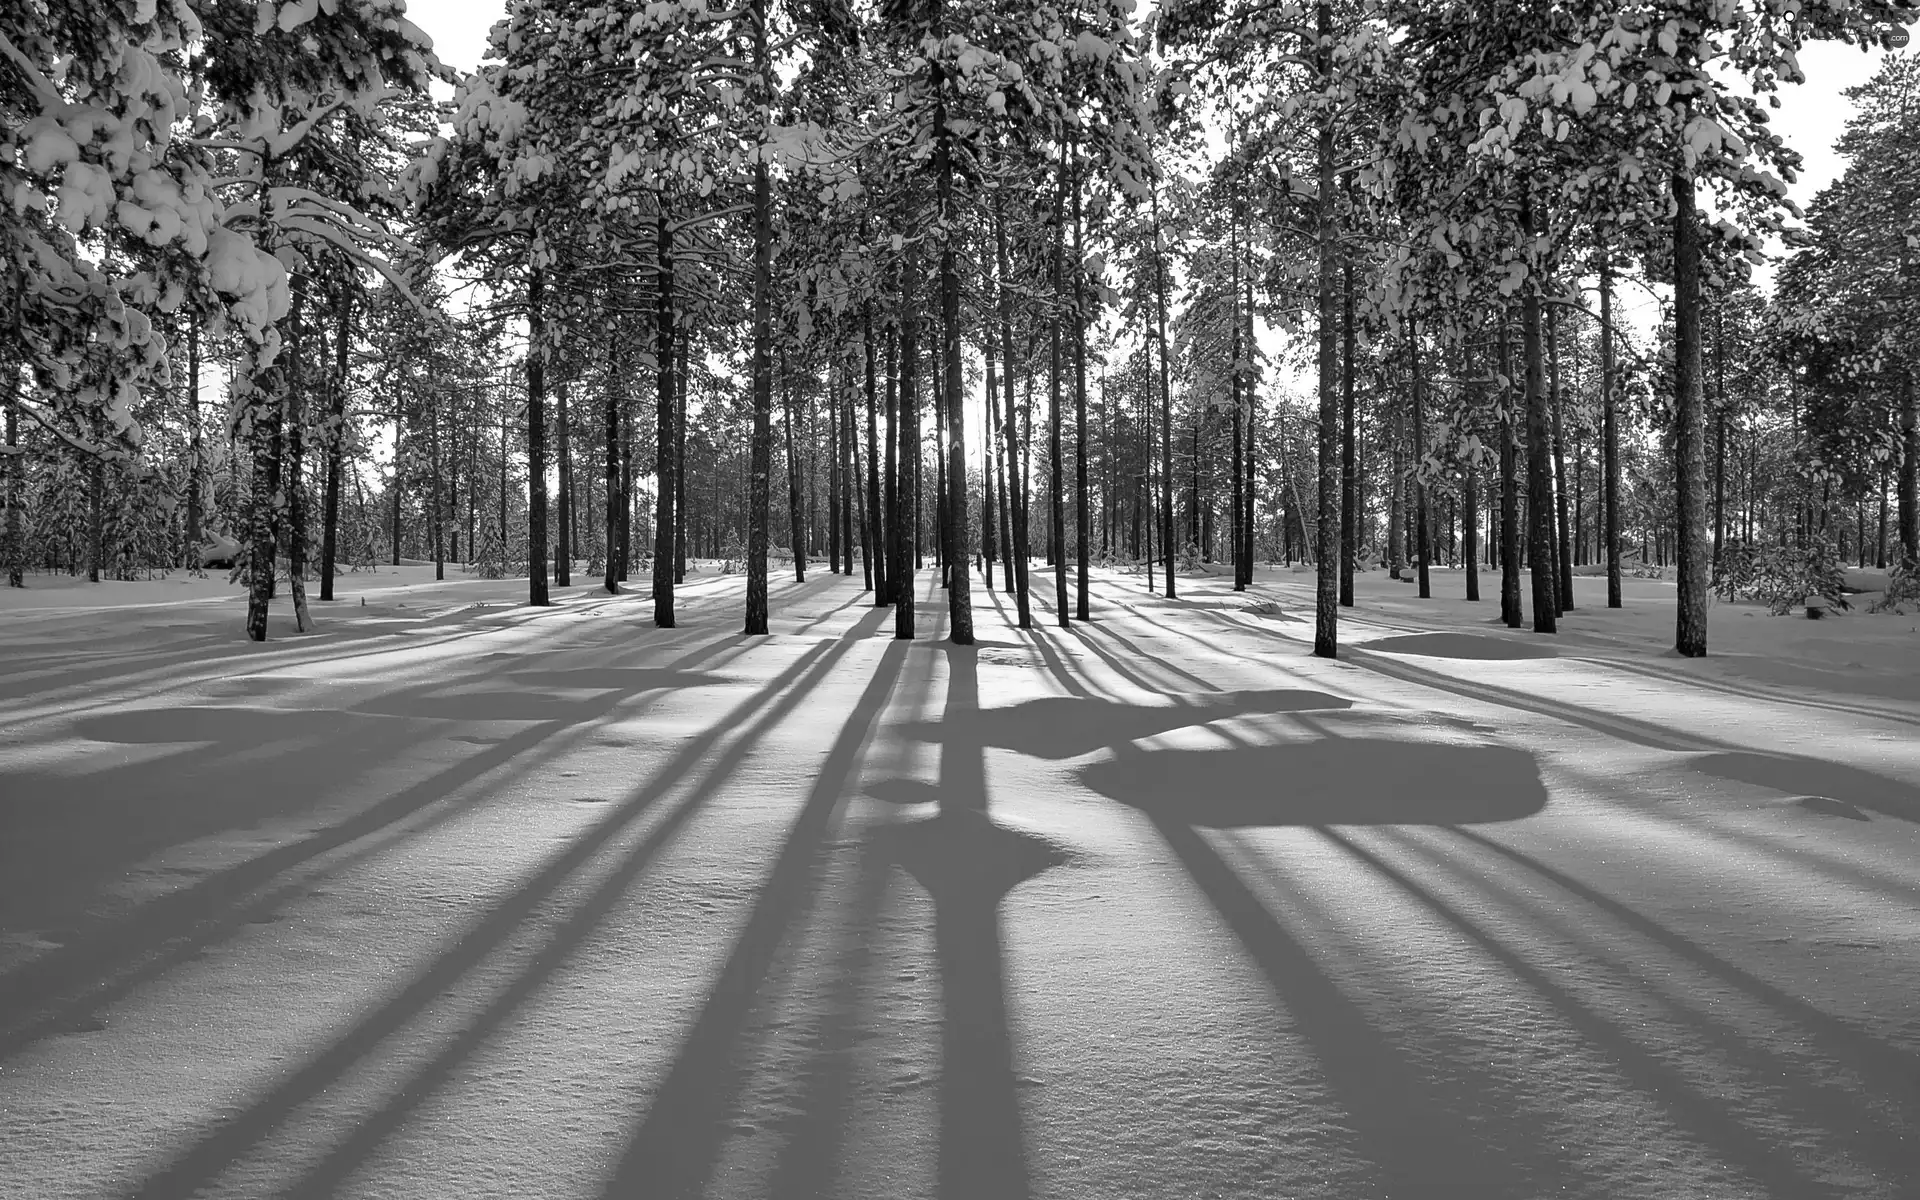 light breaking through sky, winter, forest